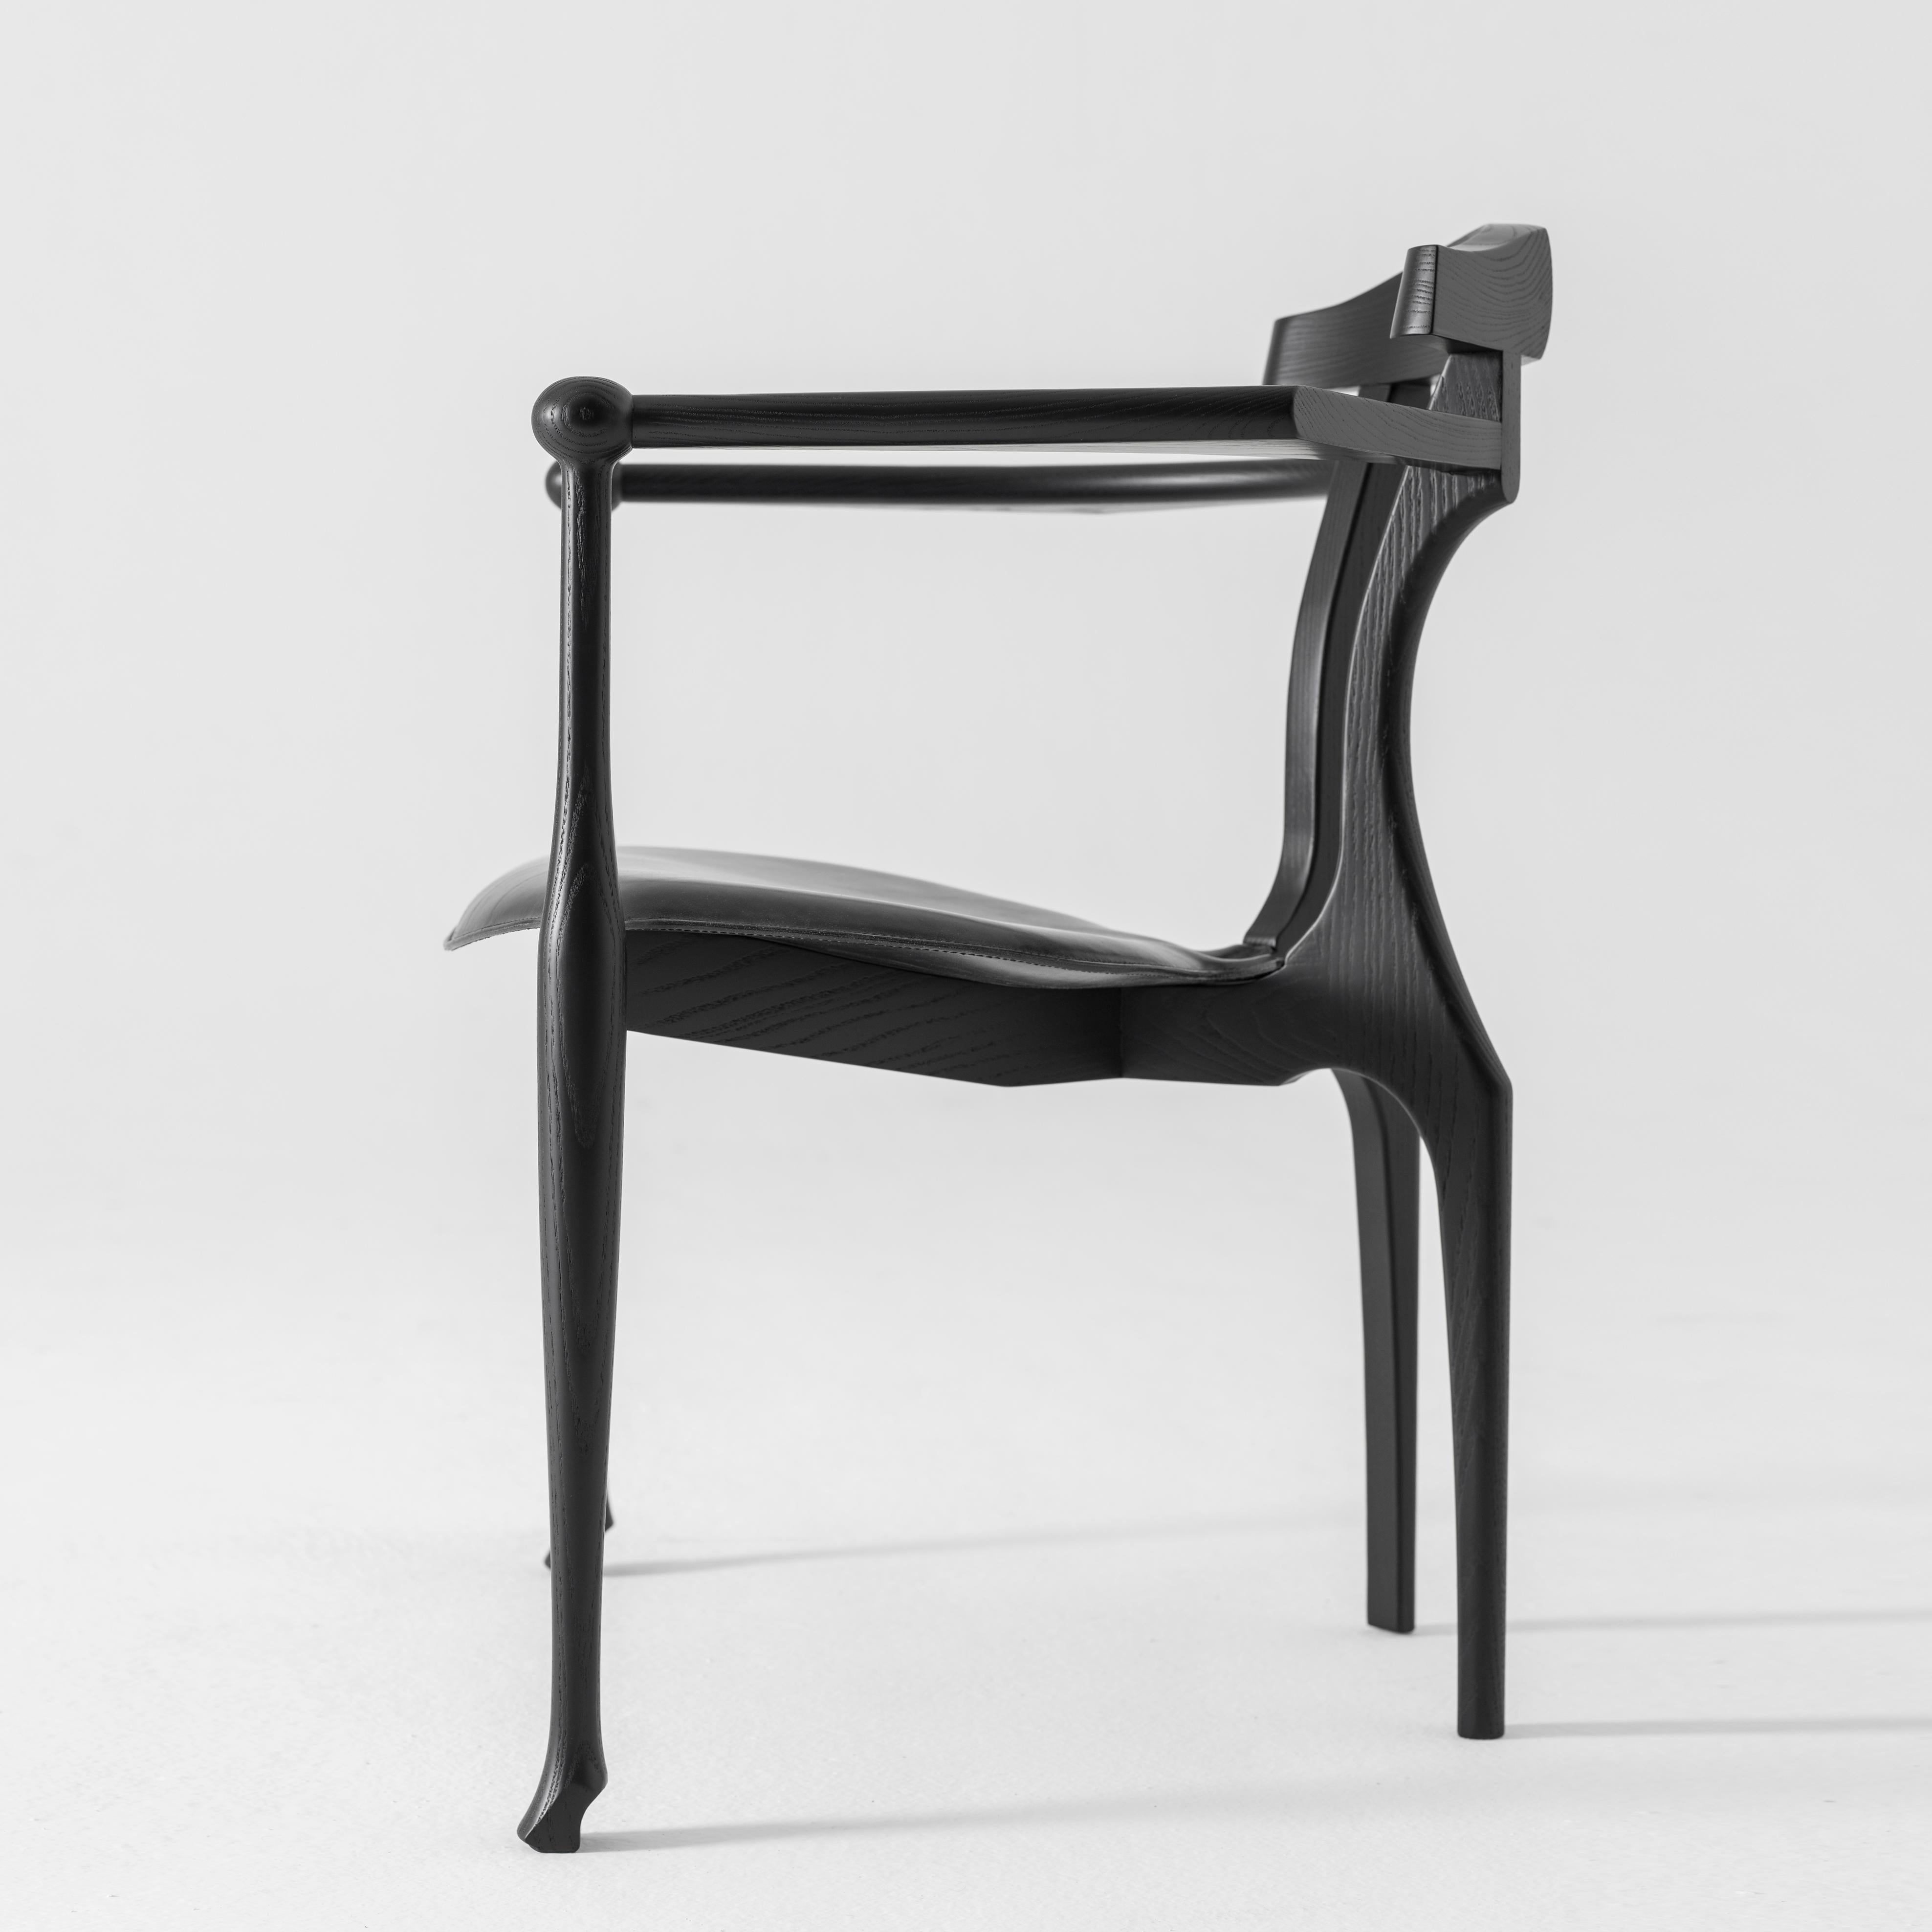 Sessel Gaulino, entworfen von Oscar Tusquets, hergestellt von BD Barcelona Design, ca. 2010.

Massive Esche, schwarz lackiert, mit Sitz aus schwarzem Leder.


Der 1987 entworfene Stuhl Gaulino wurde 1989 für den Preis für Industriedesign und